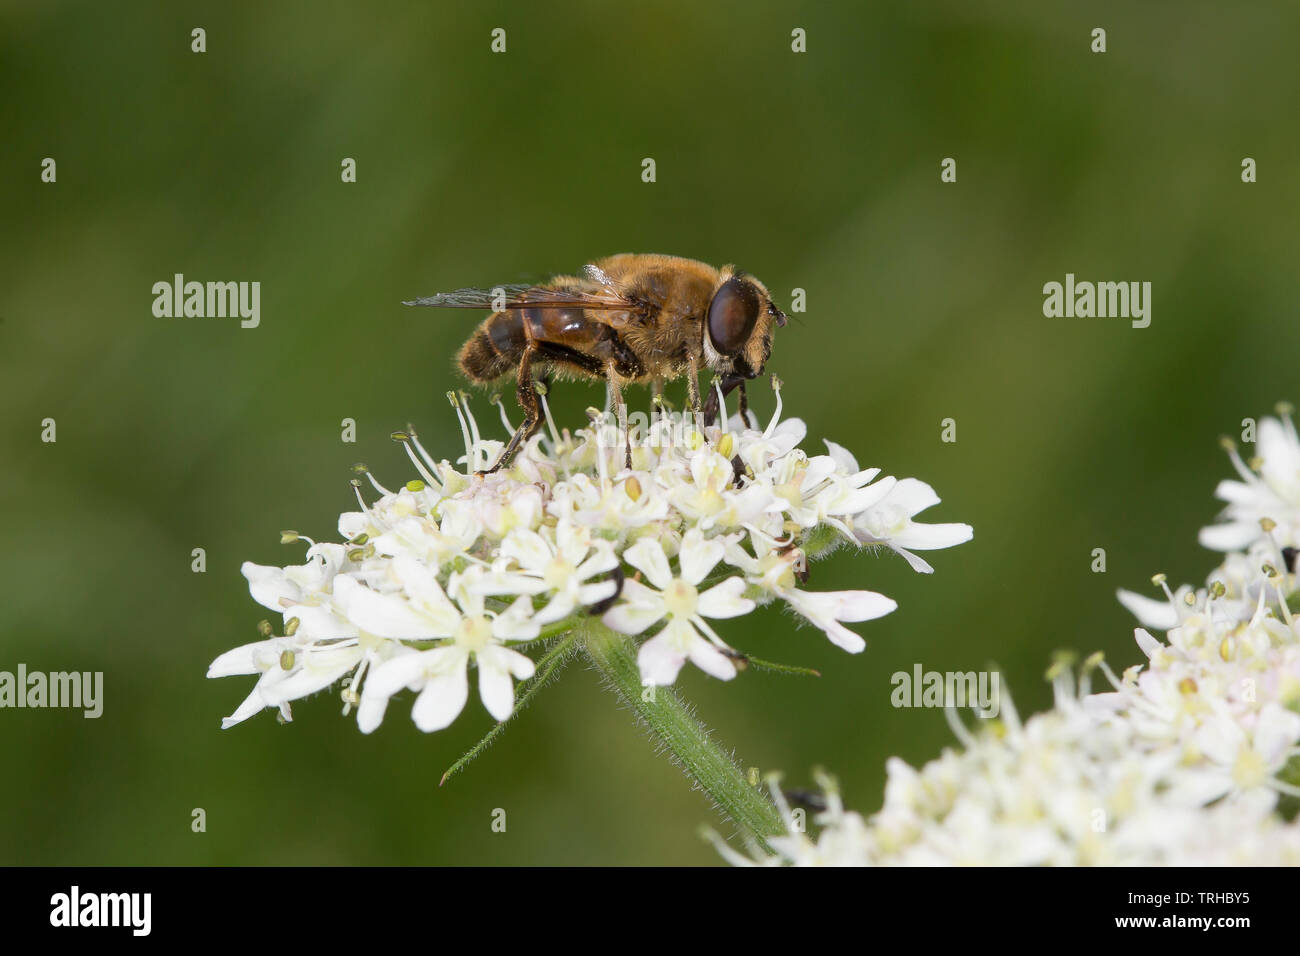 Detalle, vista lateral primer plano (foto macro) de insectos de abejas silvestres, Reino Unido aislados al aire libre en flor blanca. Foto de stock